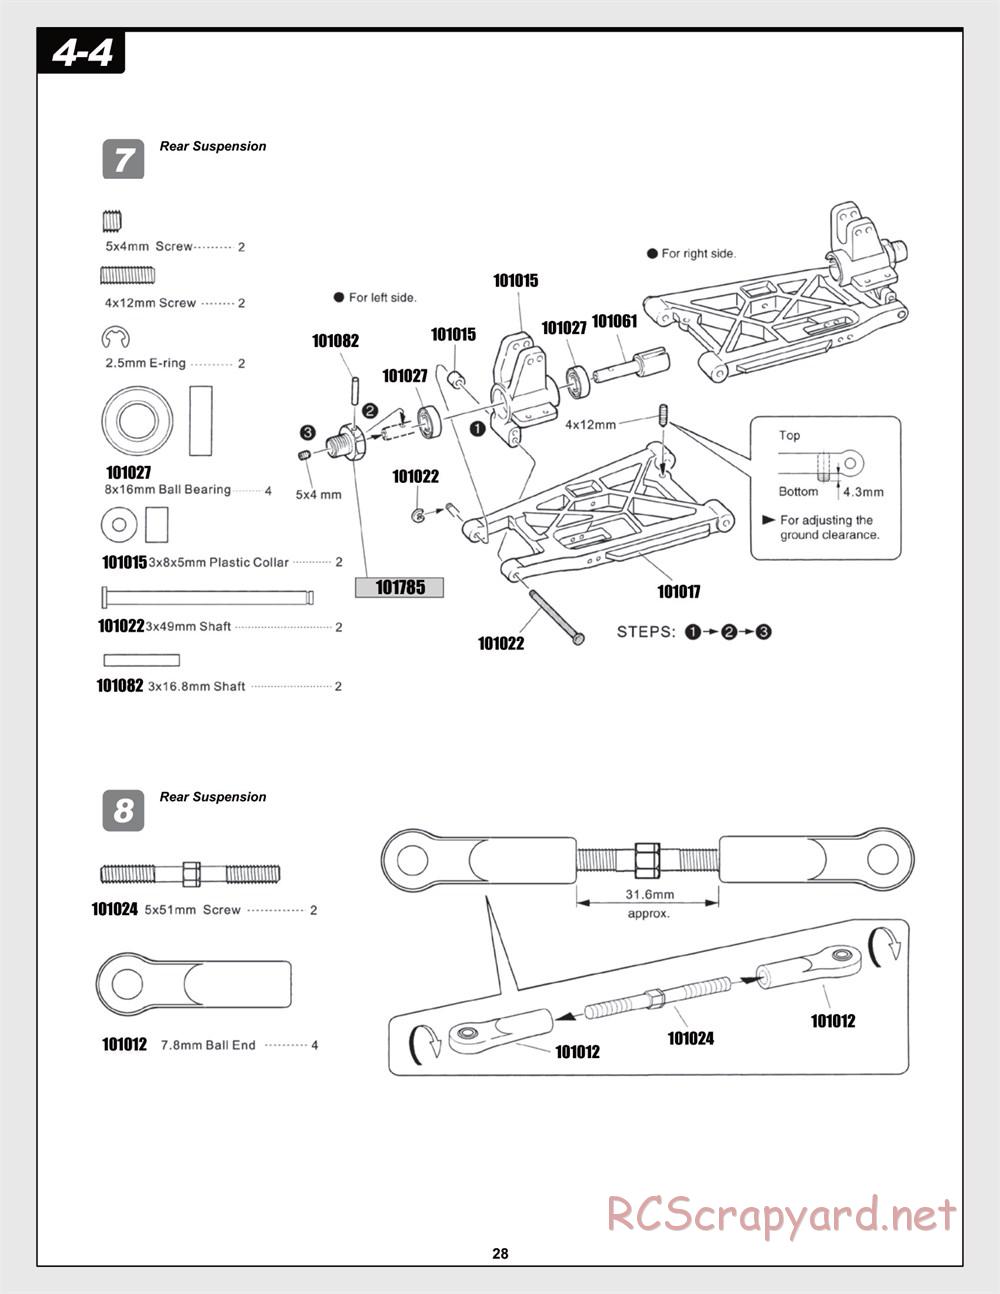 HPI - Trophy Flux Buggy - Manual - Page 28